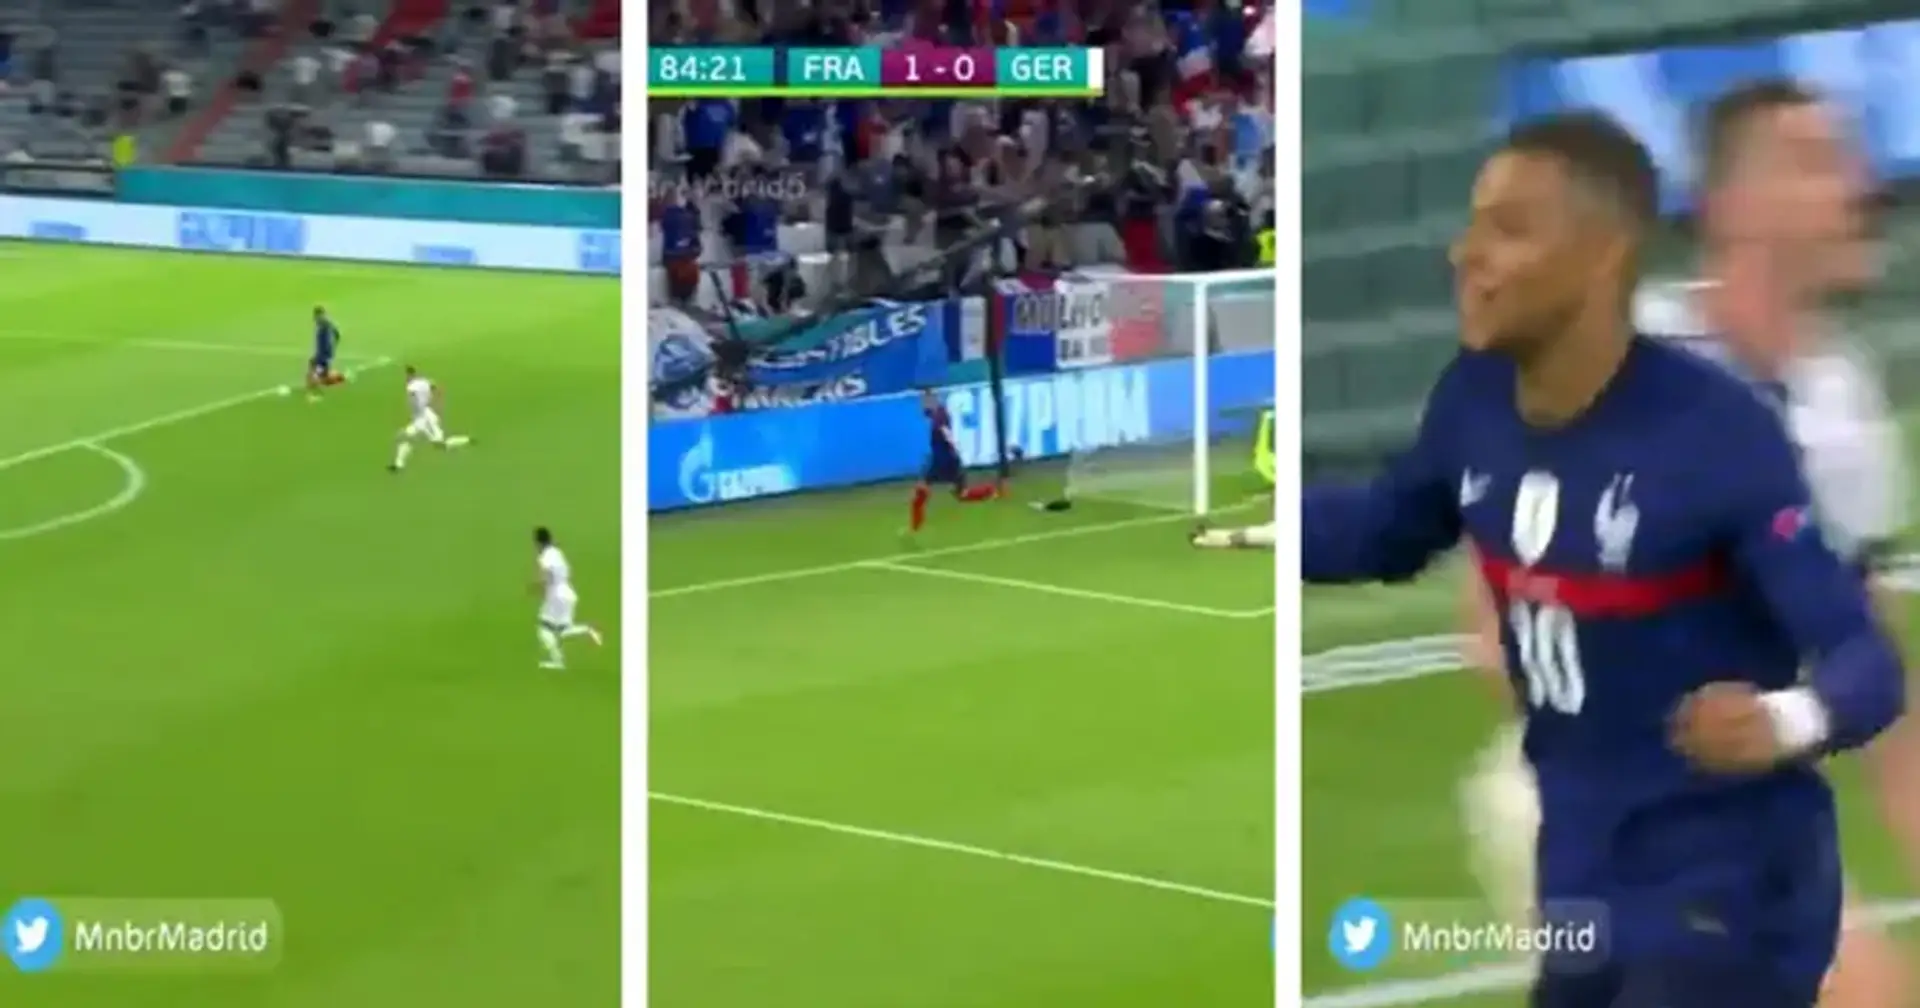 Mbappé asiste en el primer gol de Benzema tras su regreso a Francia, pero es descartado por fuera de juego